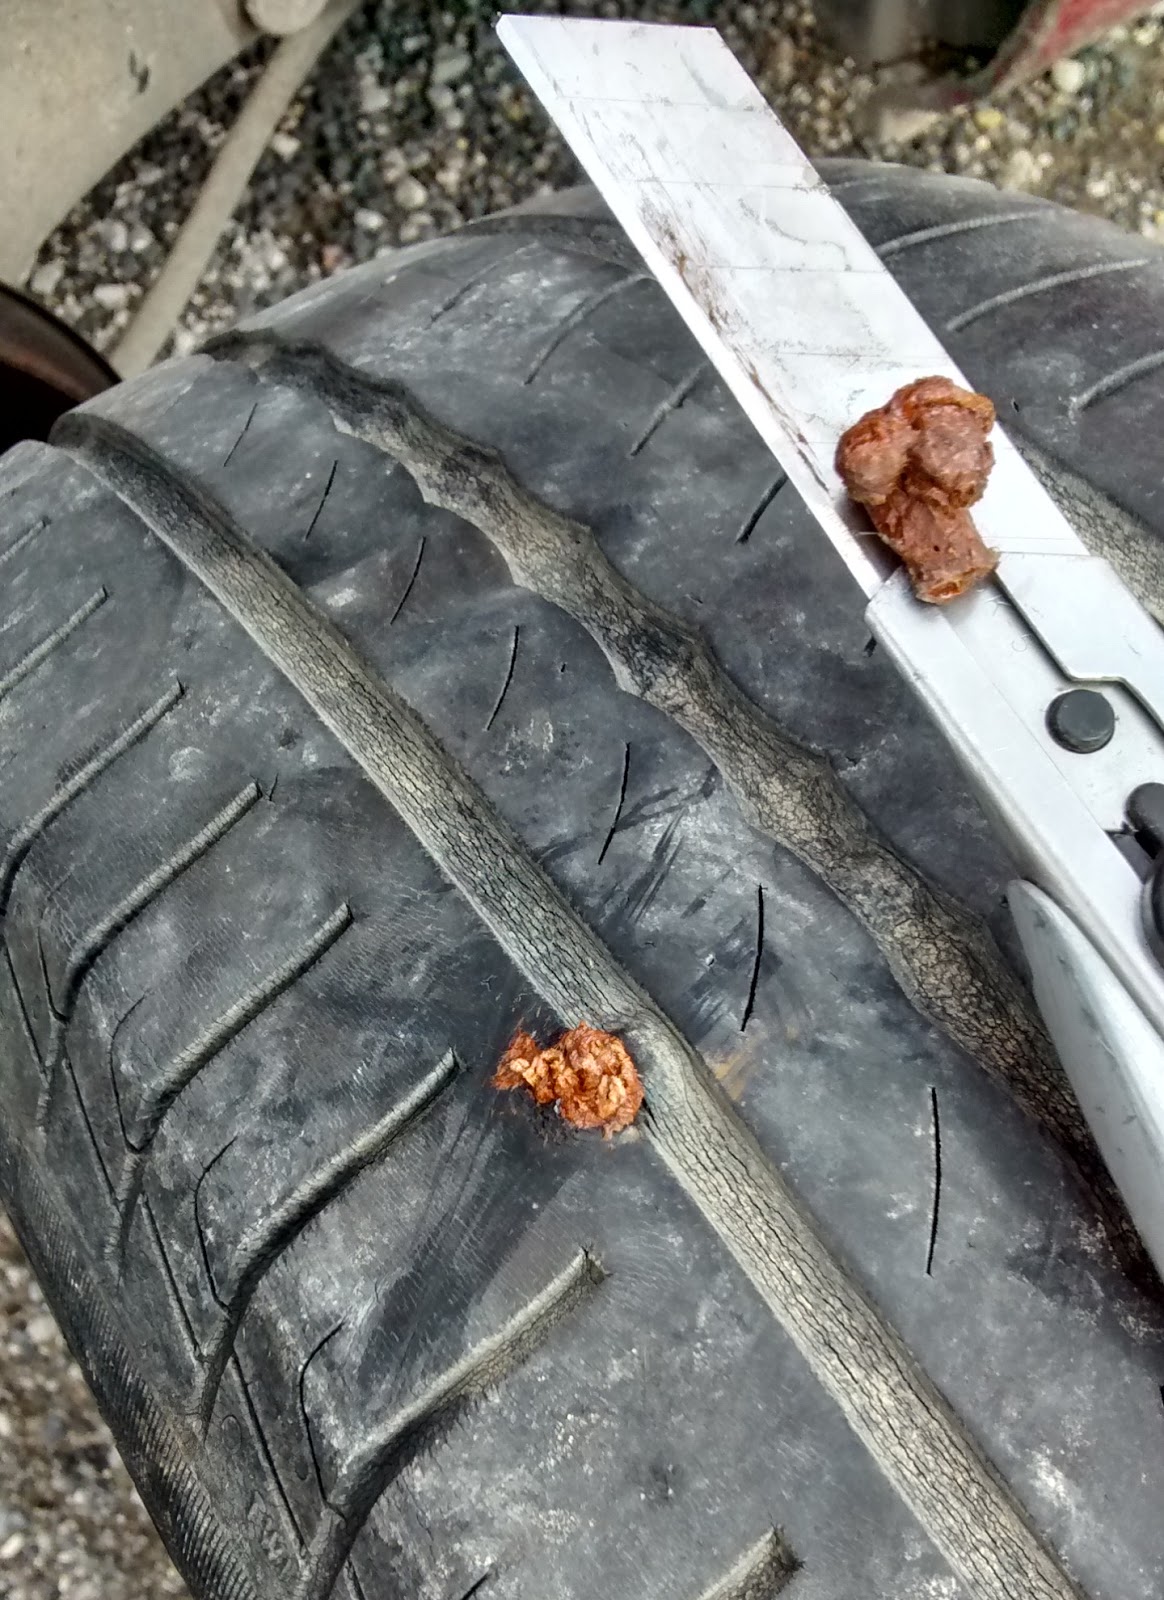 Réparer un pneu avec une mèche. 